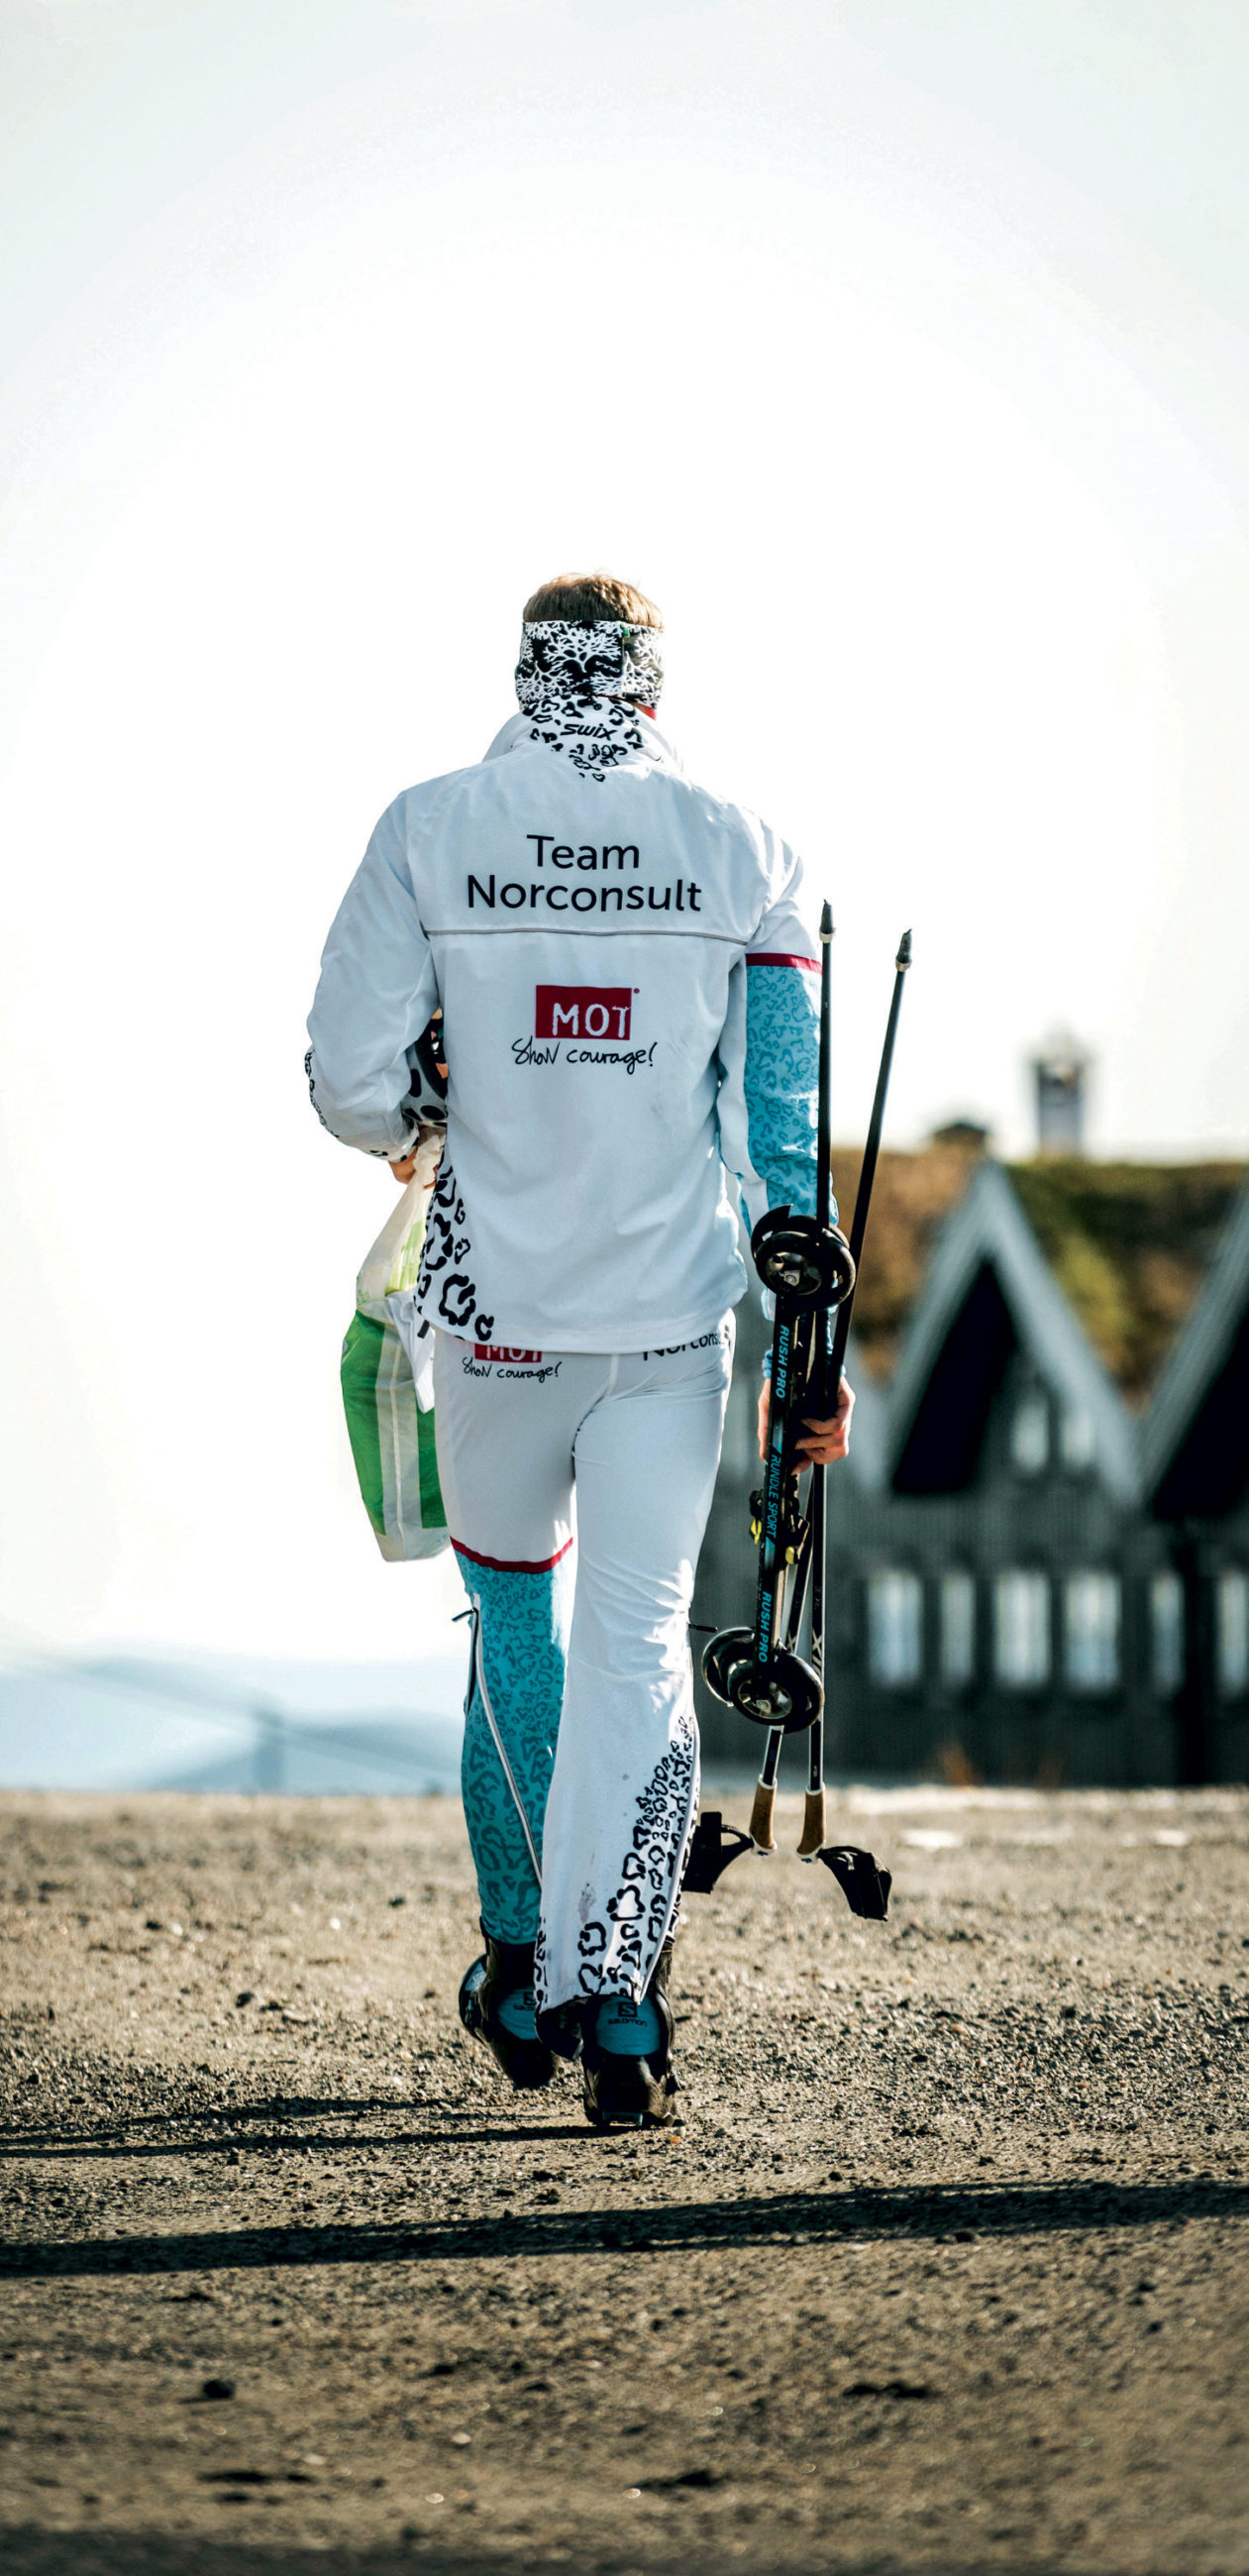 GODT TRENINGSMILJØ: Team Norconsult er bare ett eksempel på de fantastiske gode treningsmiljøene i norsk skisport, som finnes over hele landet. Foto: Team Norconsult